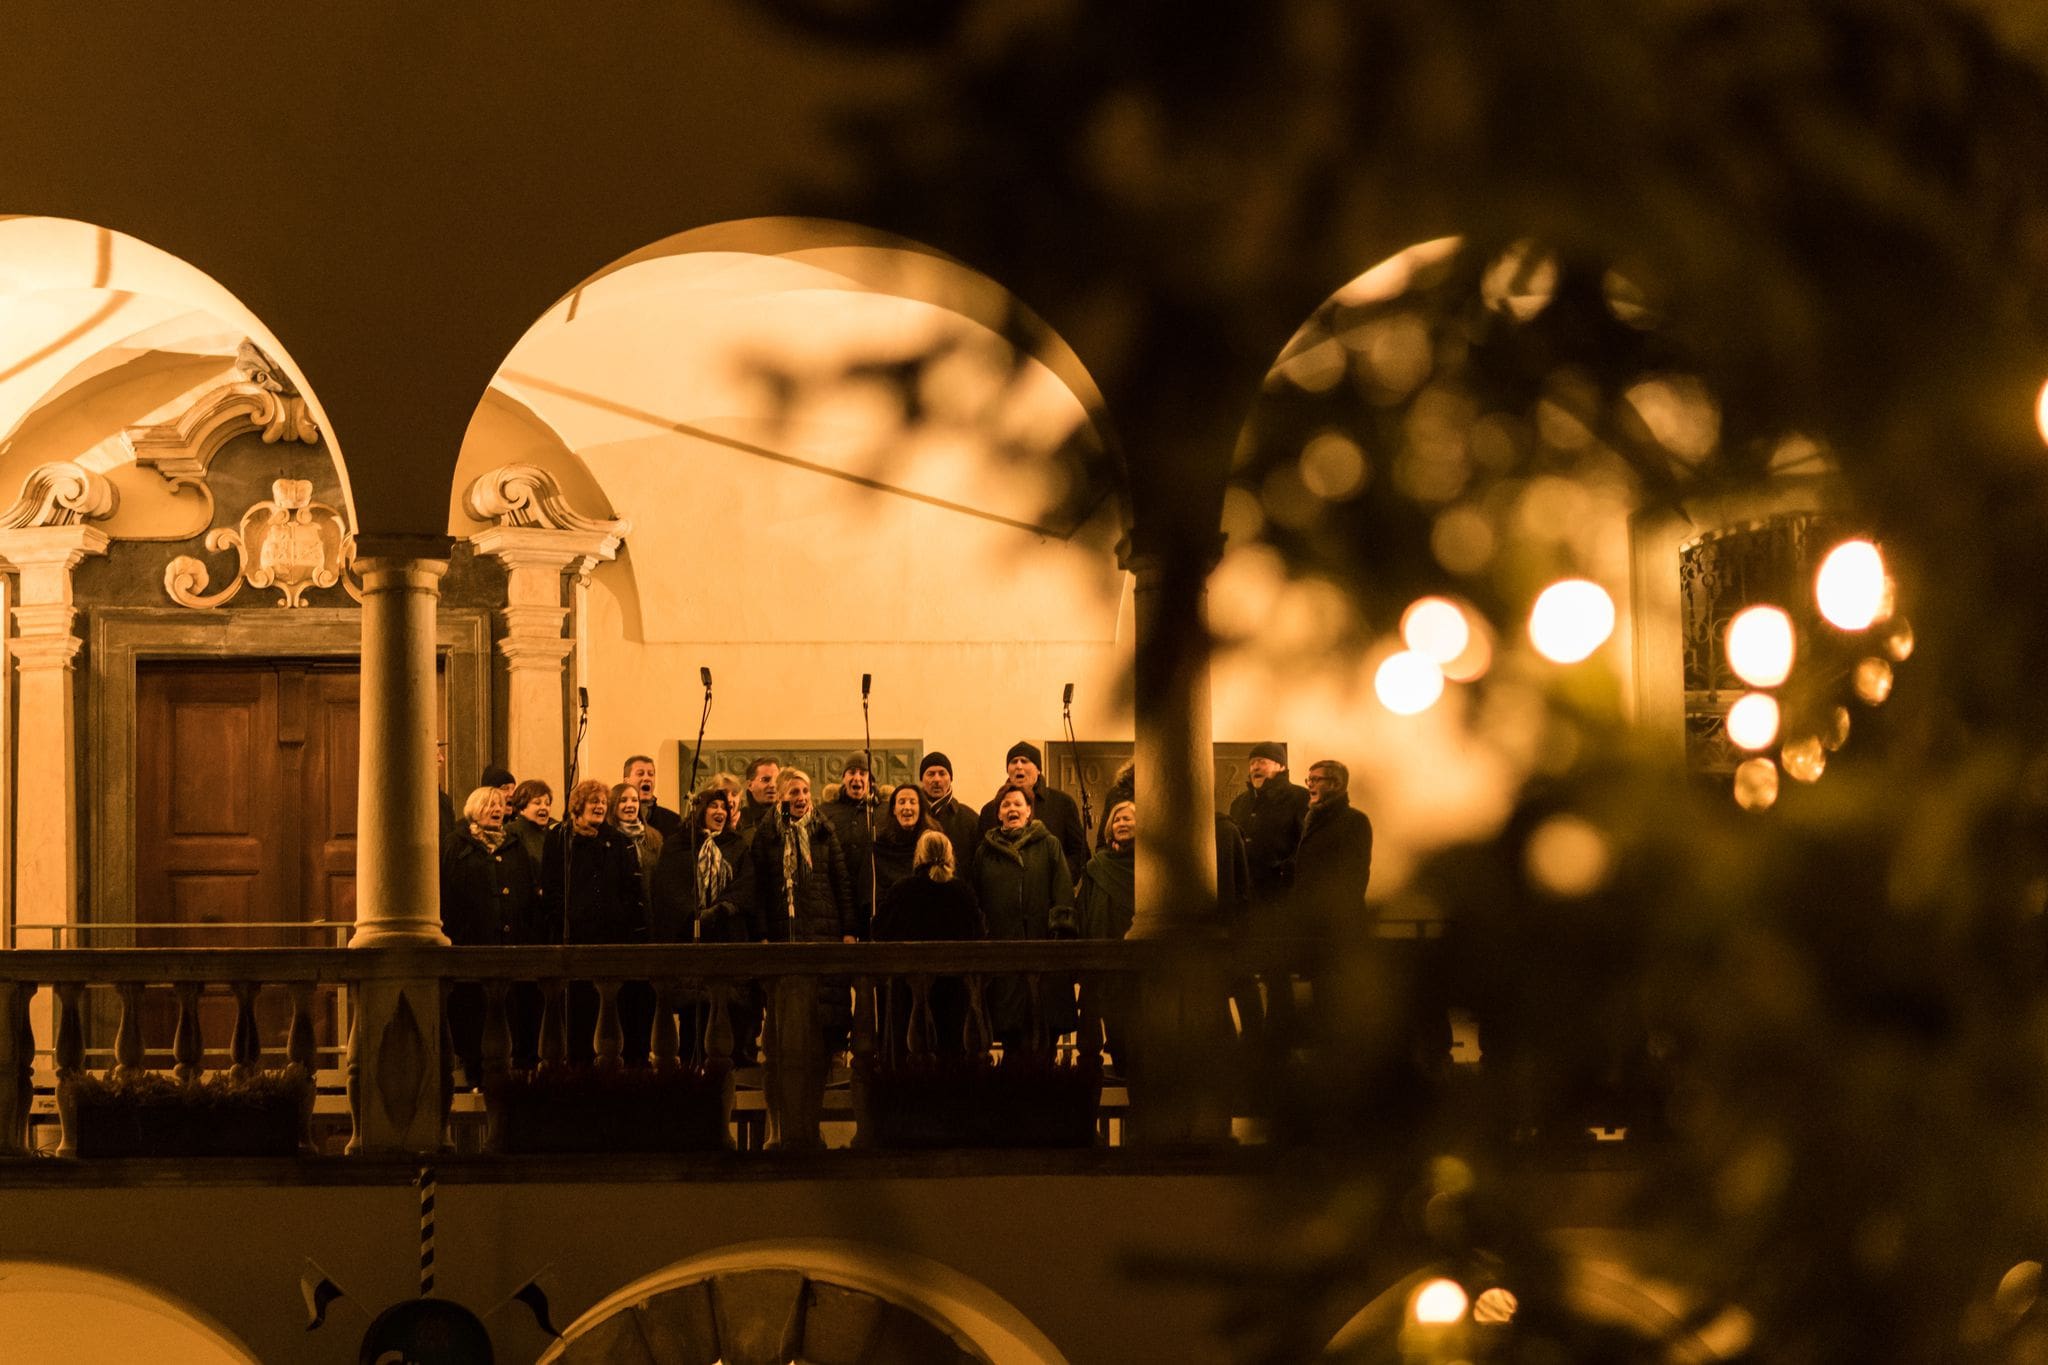 Kärntner Chor singt Weihnachtslieder in der Adventzeit in Klagenfurt